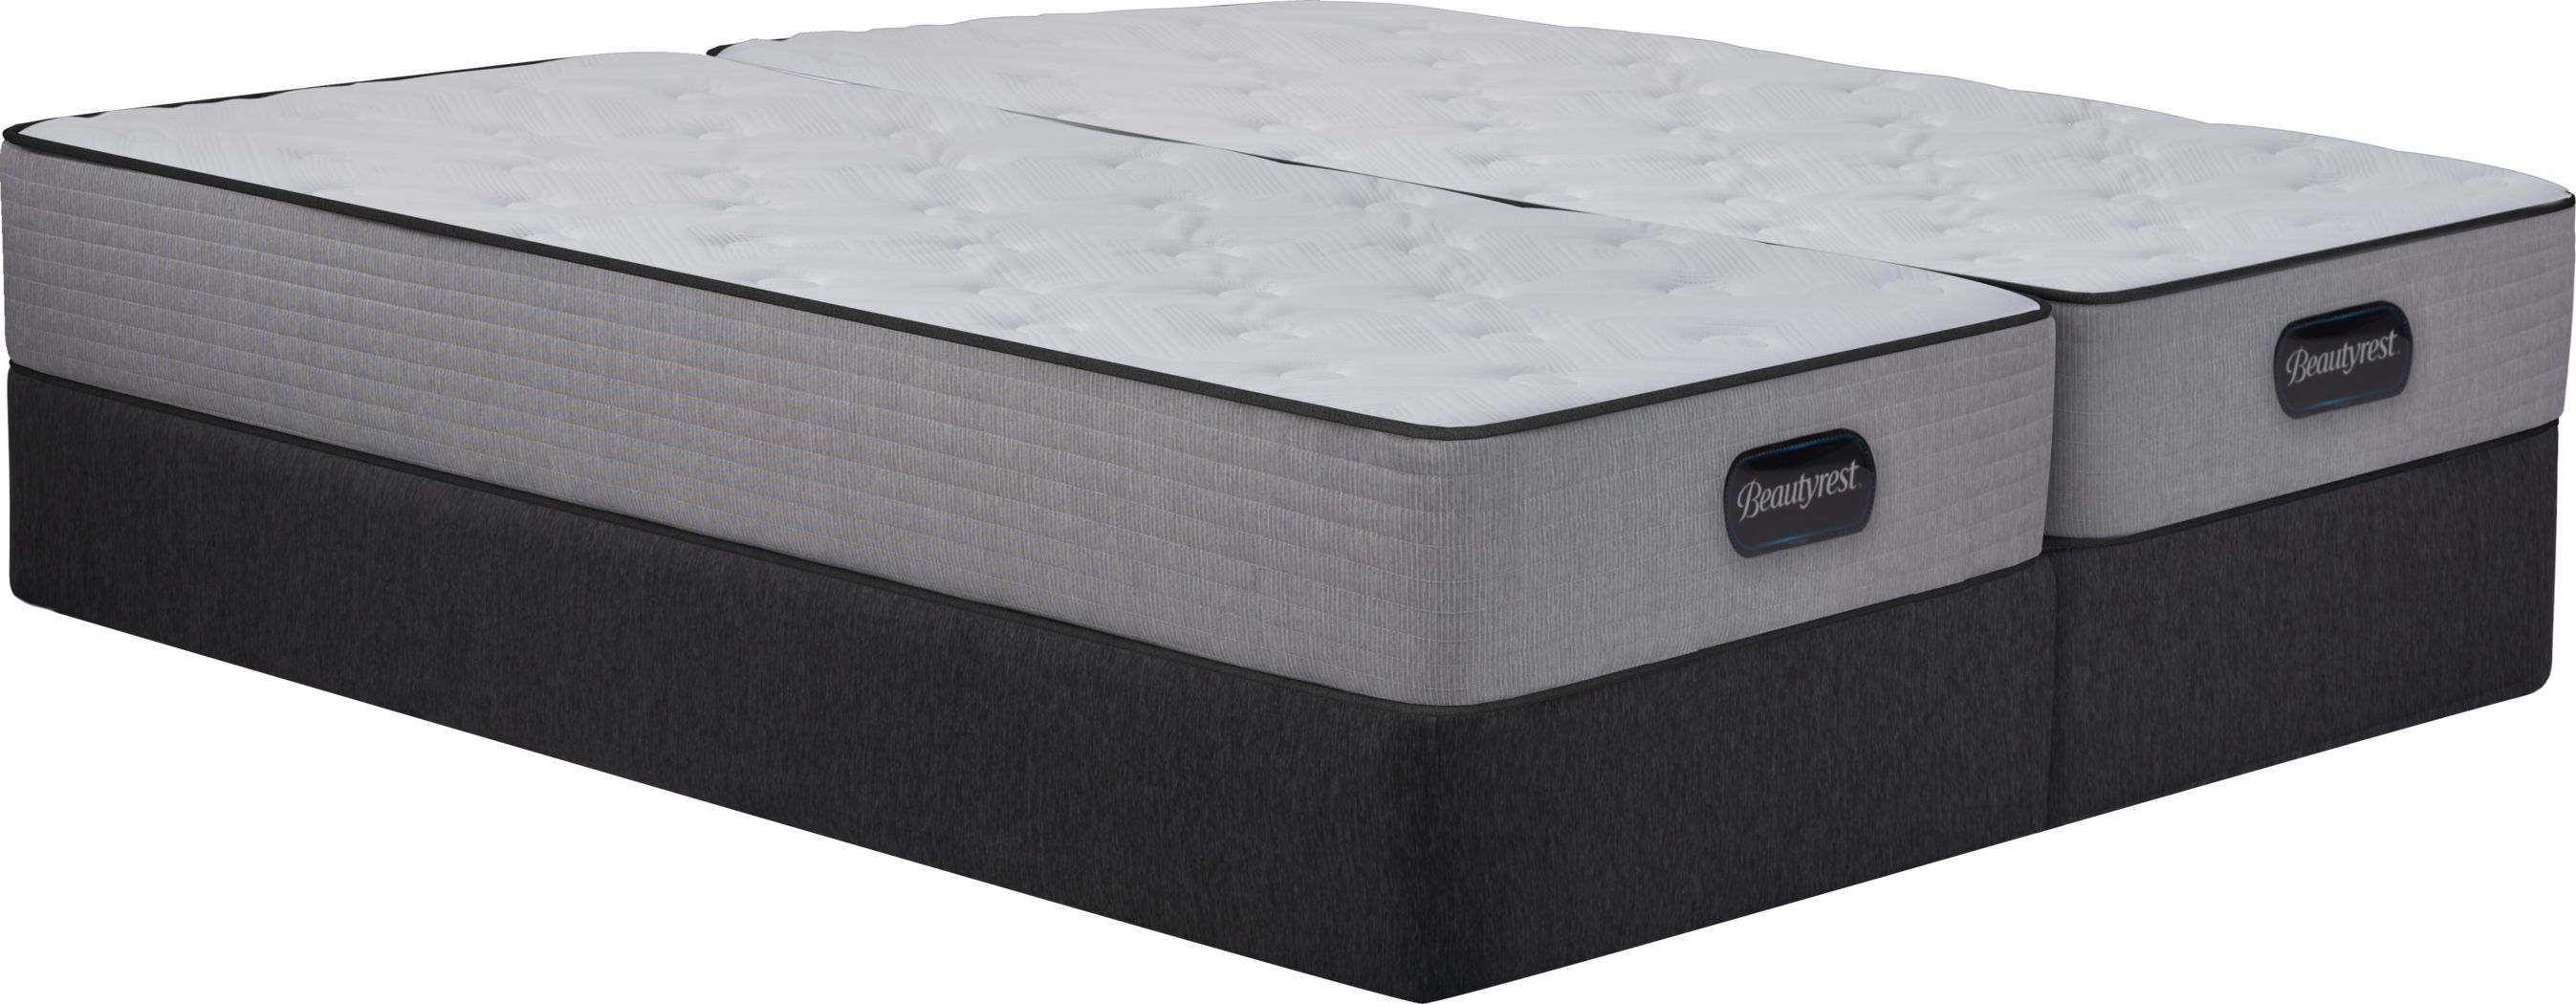 bristol hills mattress review